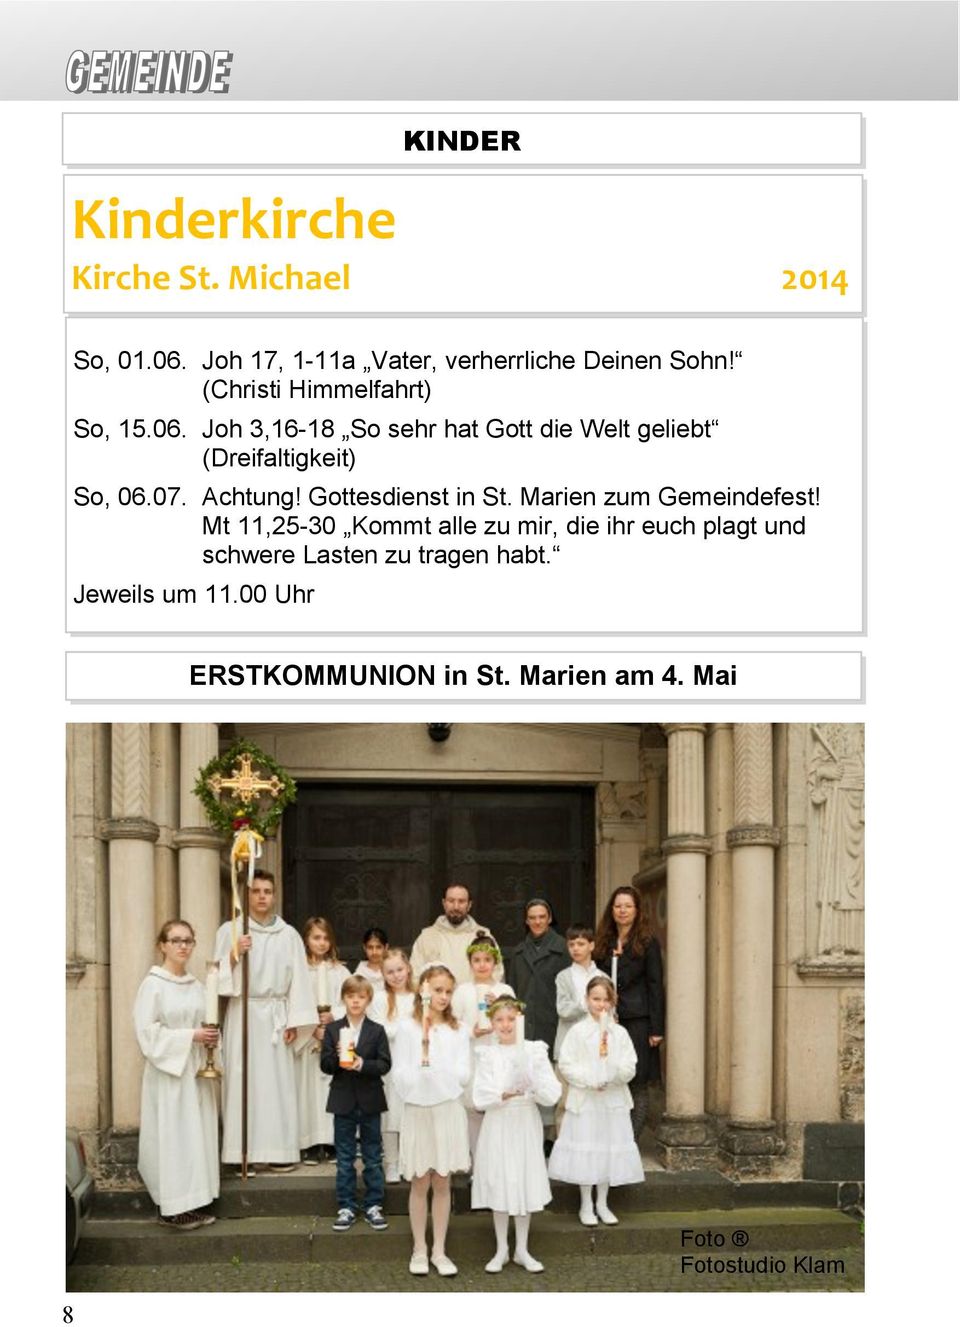 Achtung! Gottesdienst in St. Marien zum Gemeindefest!